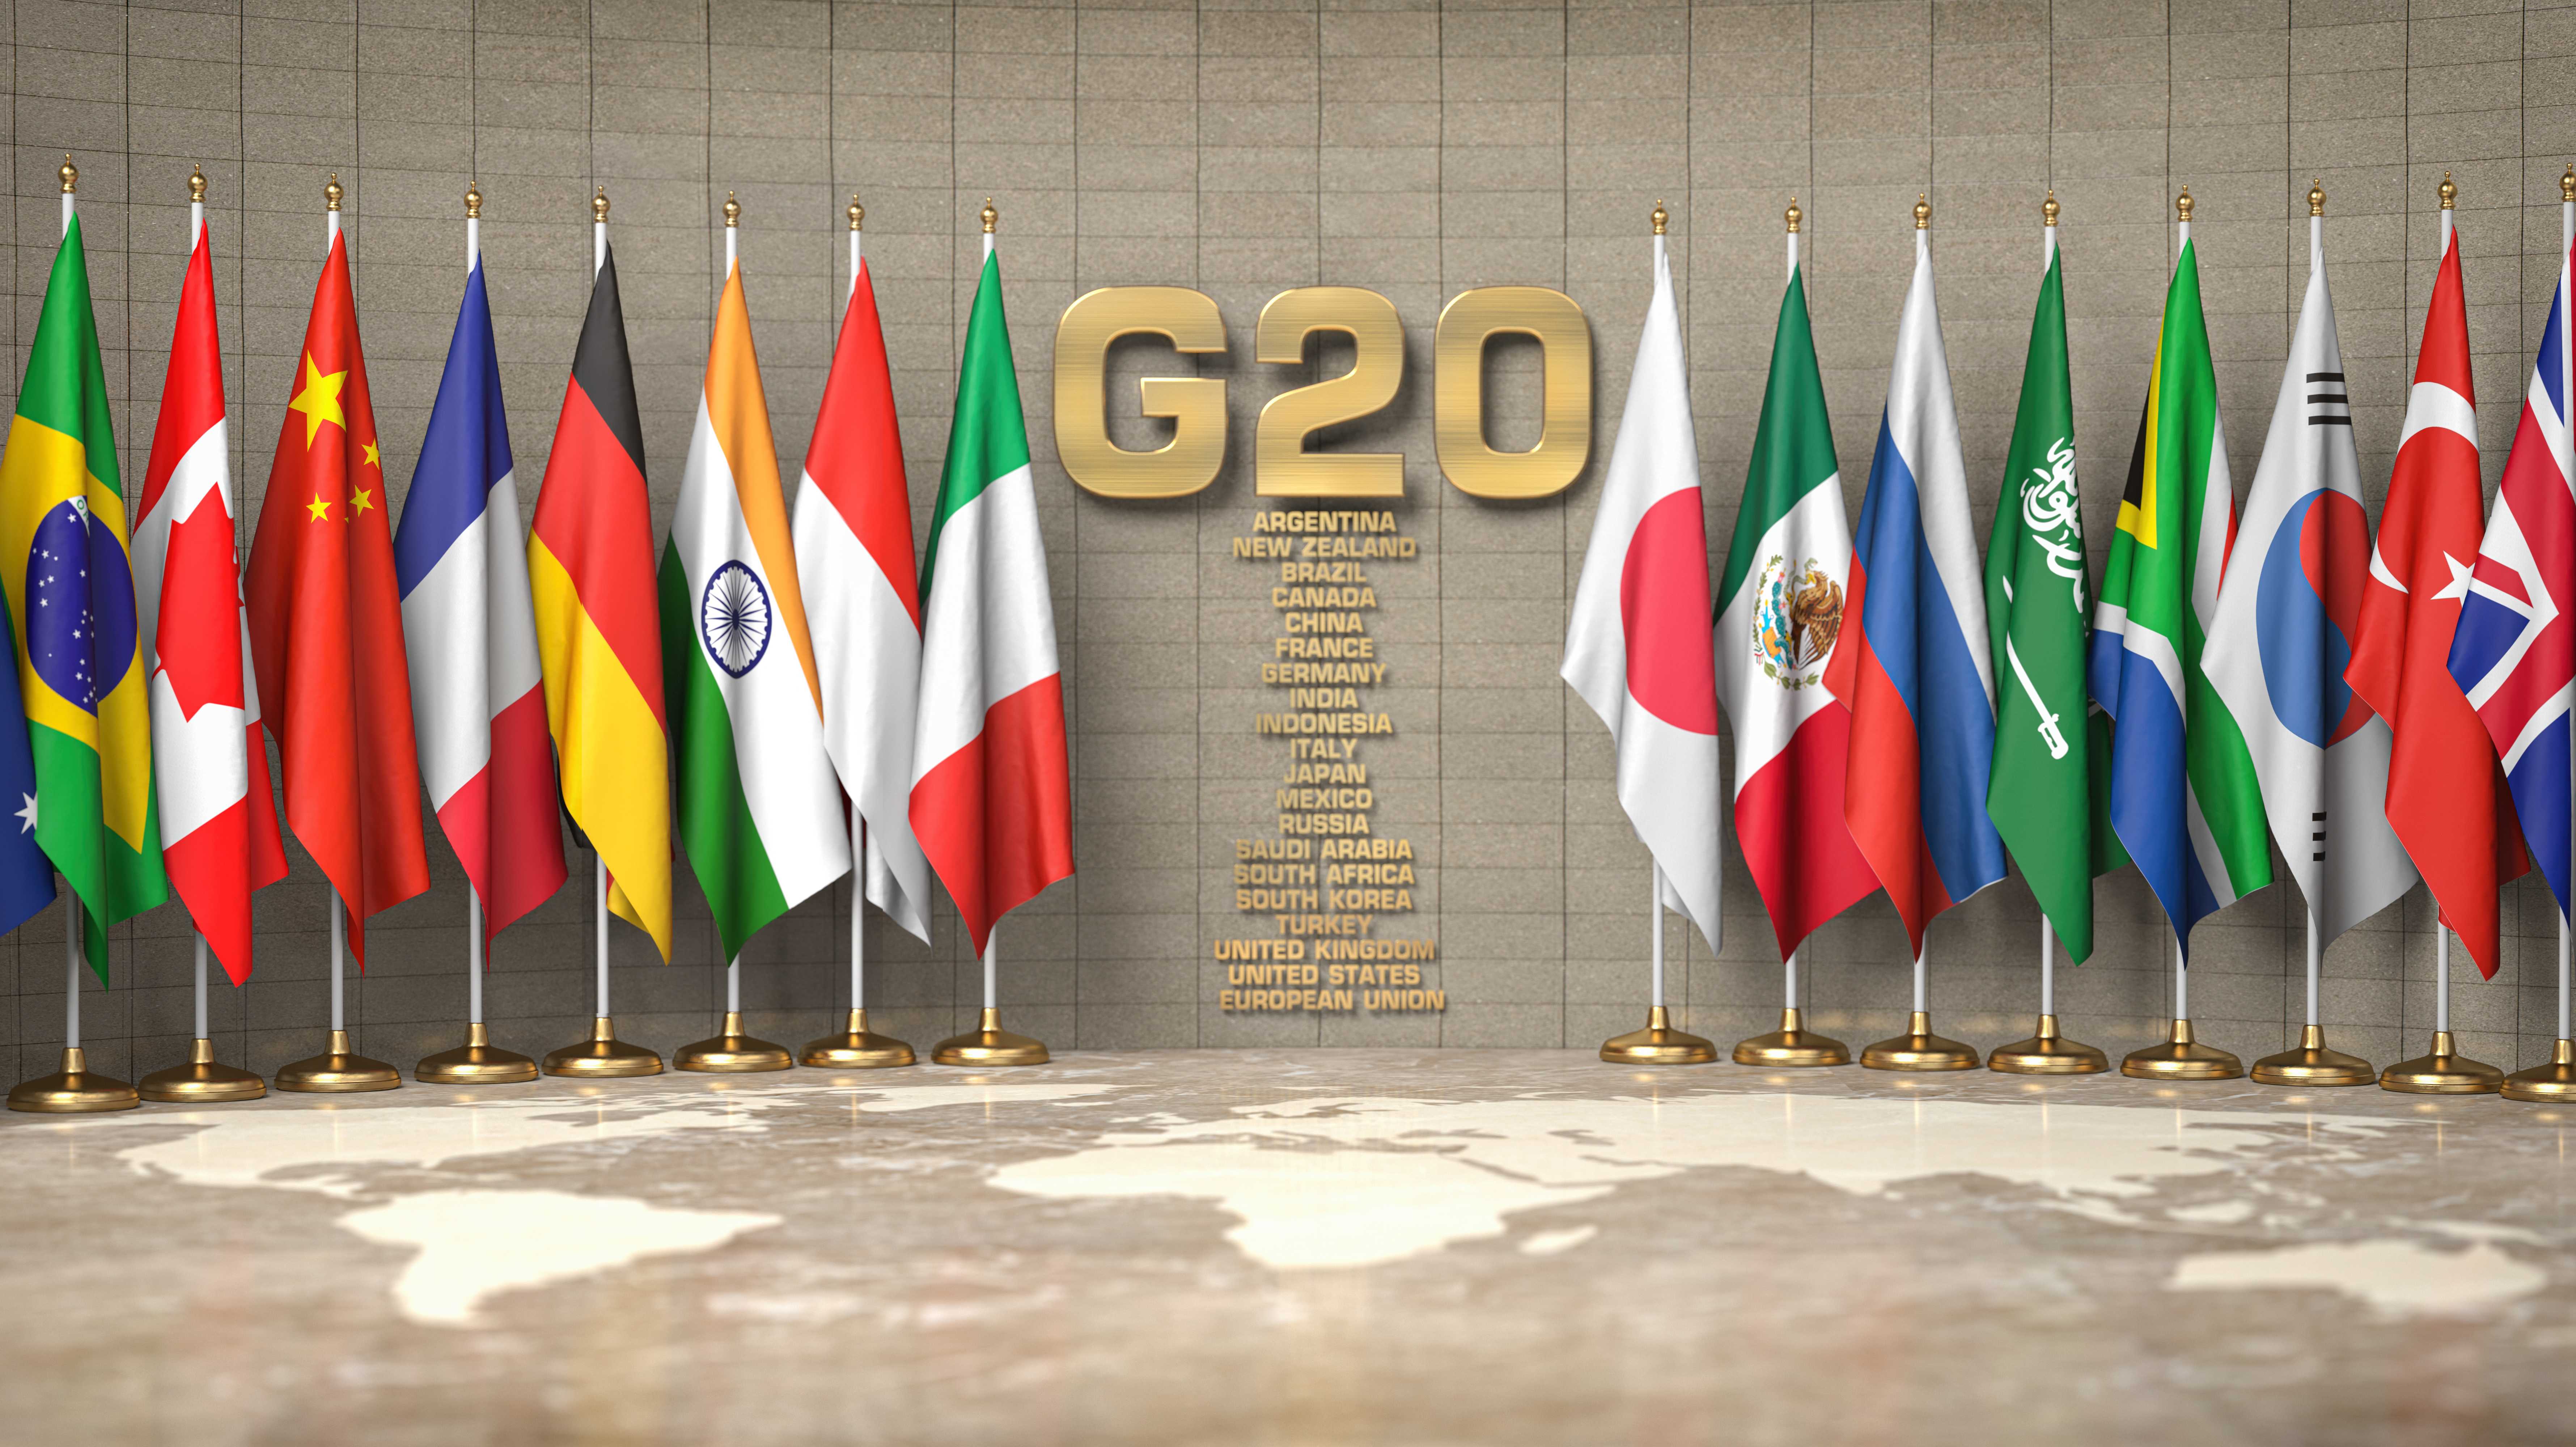 Flaggen von Mitgliedern der G20-Gruppe in einem Konferenzraum.